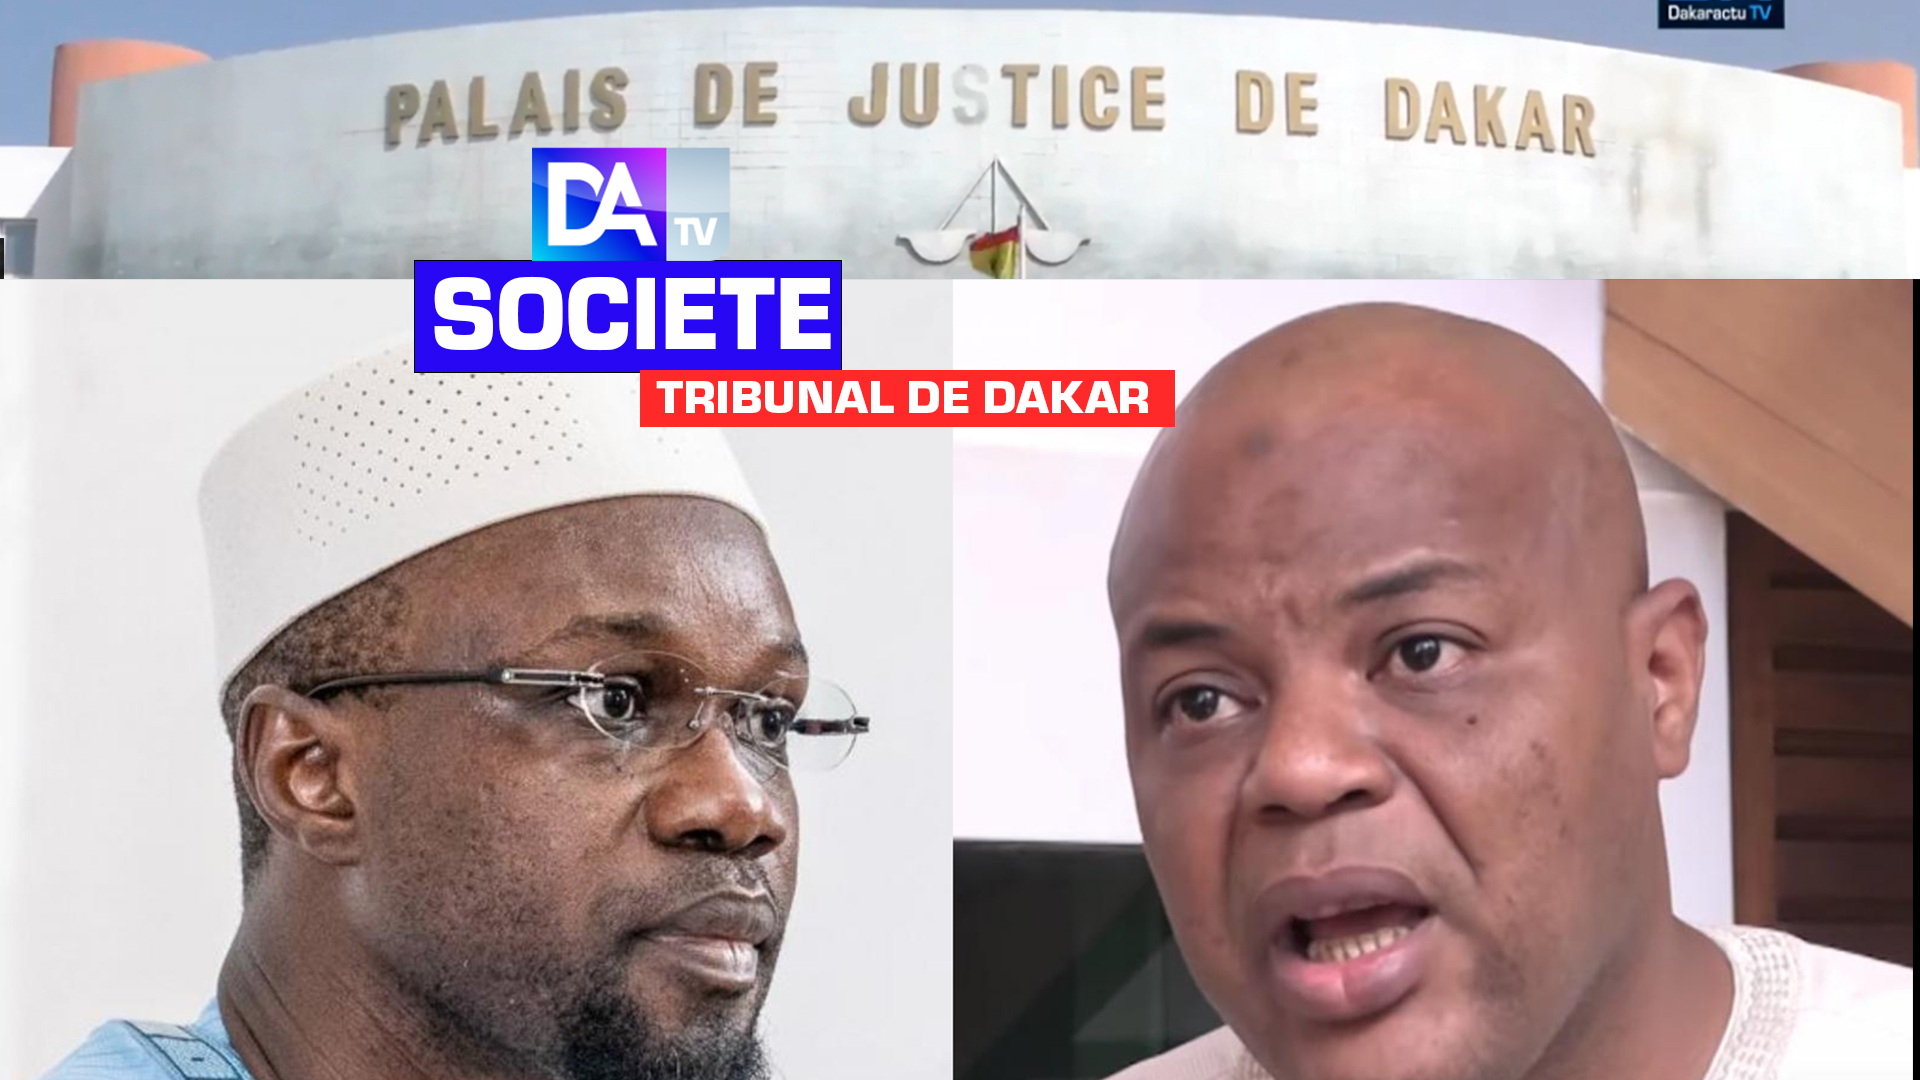 Procès sur l’affaire des 29 milliards de Prodac : Le parquet juge dilatoire la position de Ousmane Sonko qui estime n’avoir pas reçu de citation